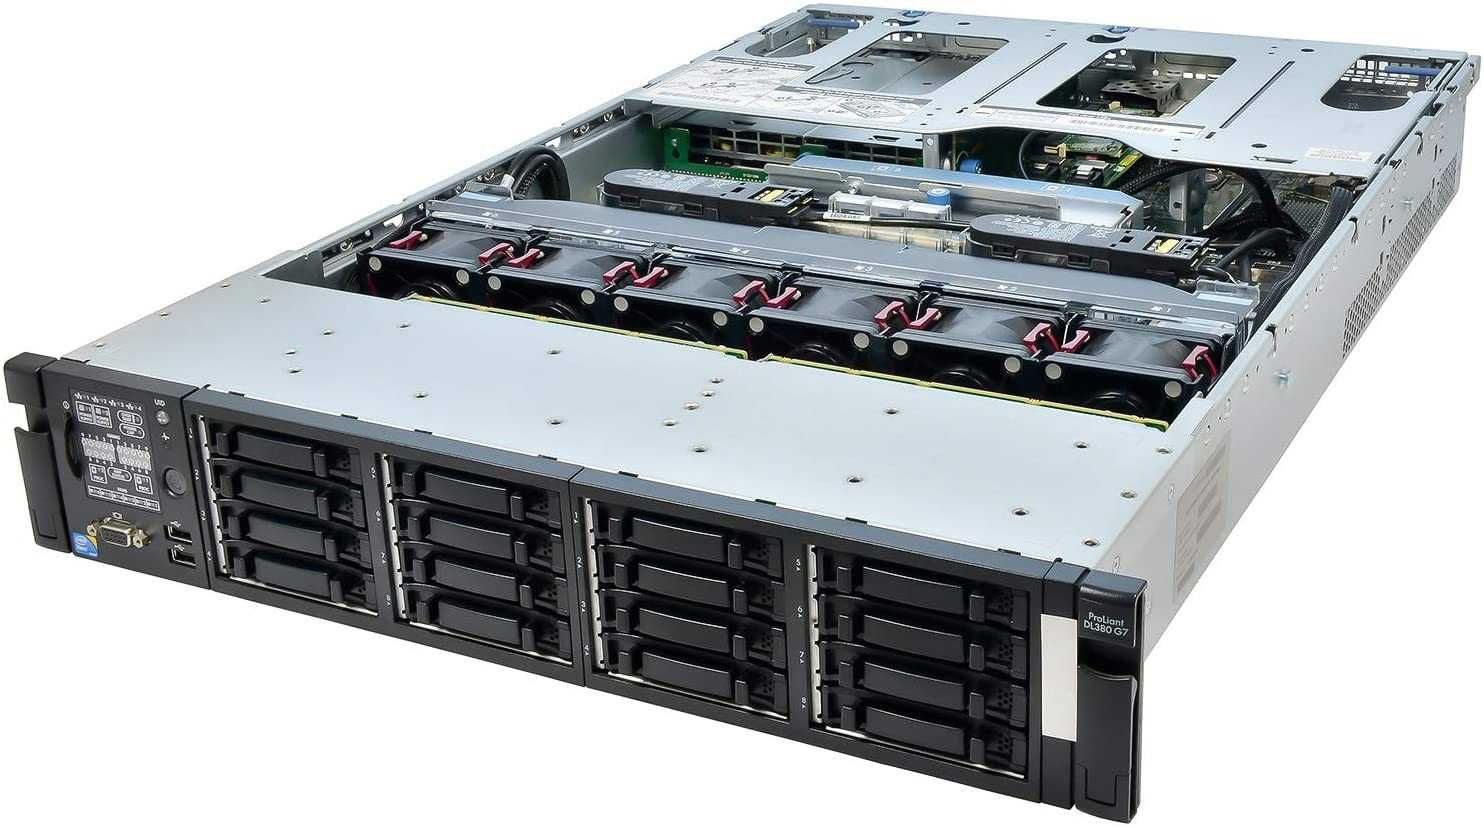 Server HP proliant dl380 g7 130 gb Ram 8HDD sas